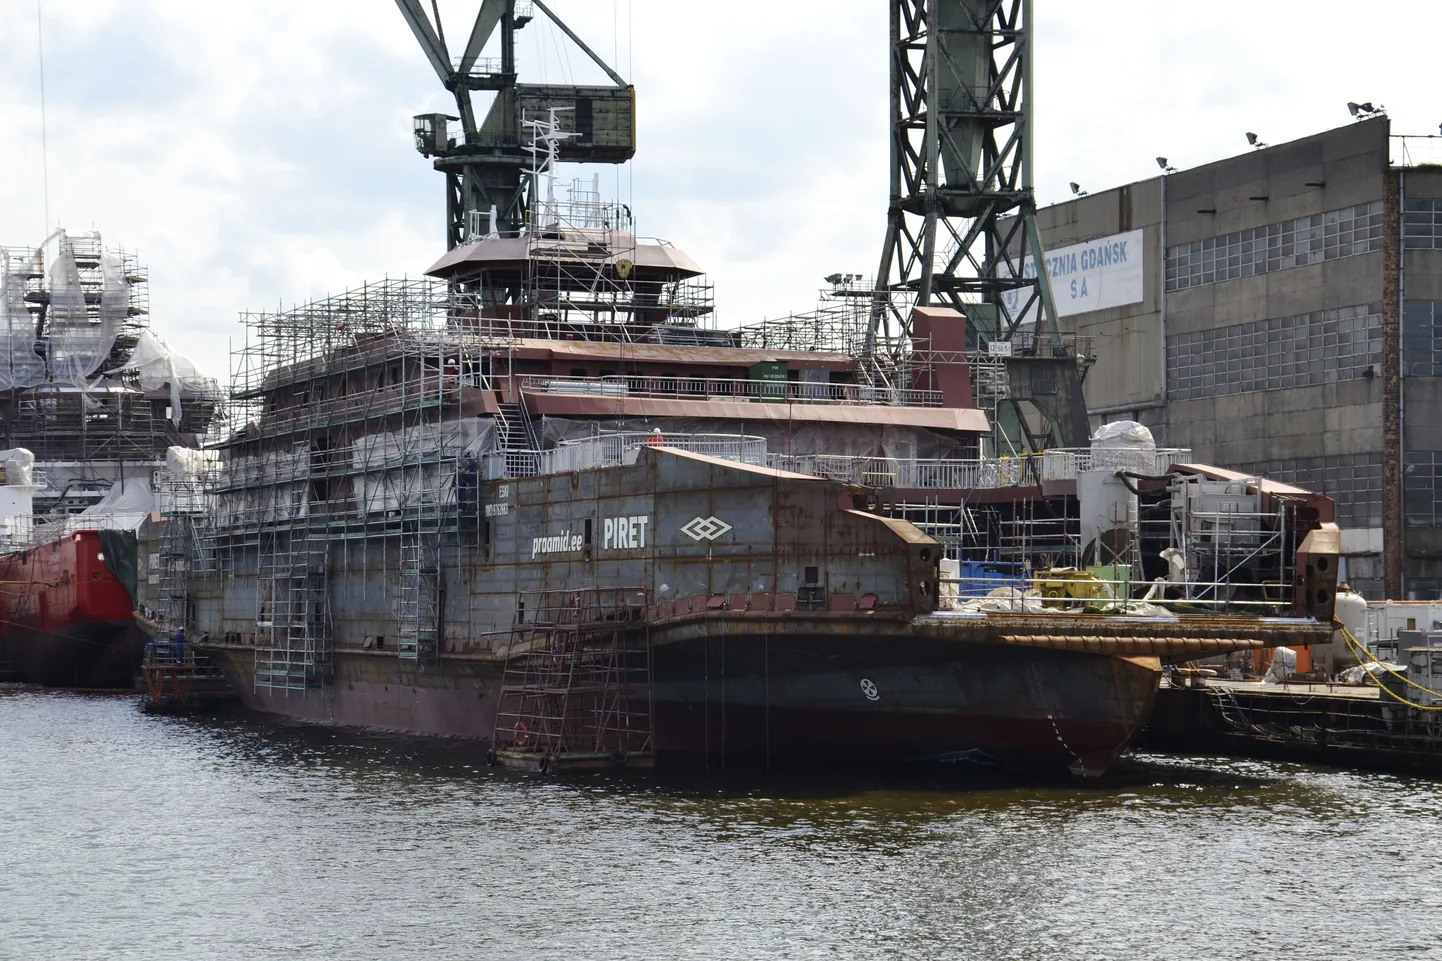 Töö parvlaeval Piret eelmisel nädalal Remontowa tehases Poolas